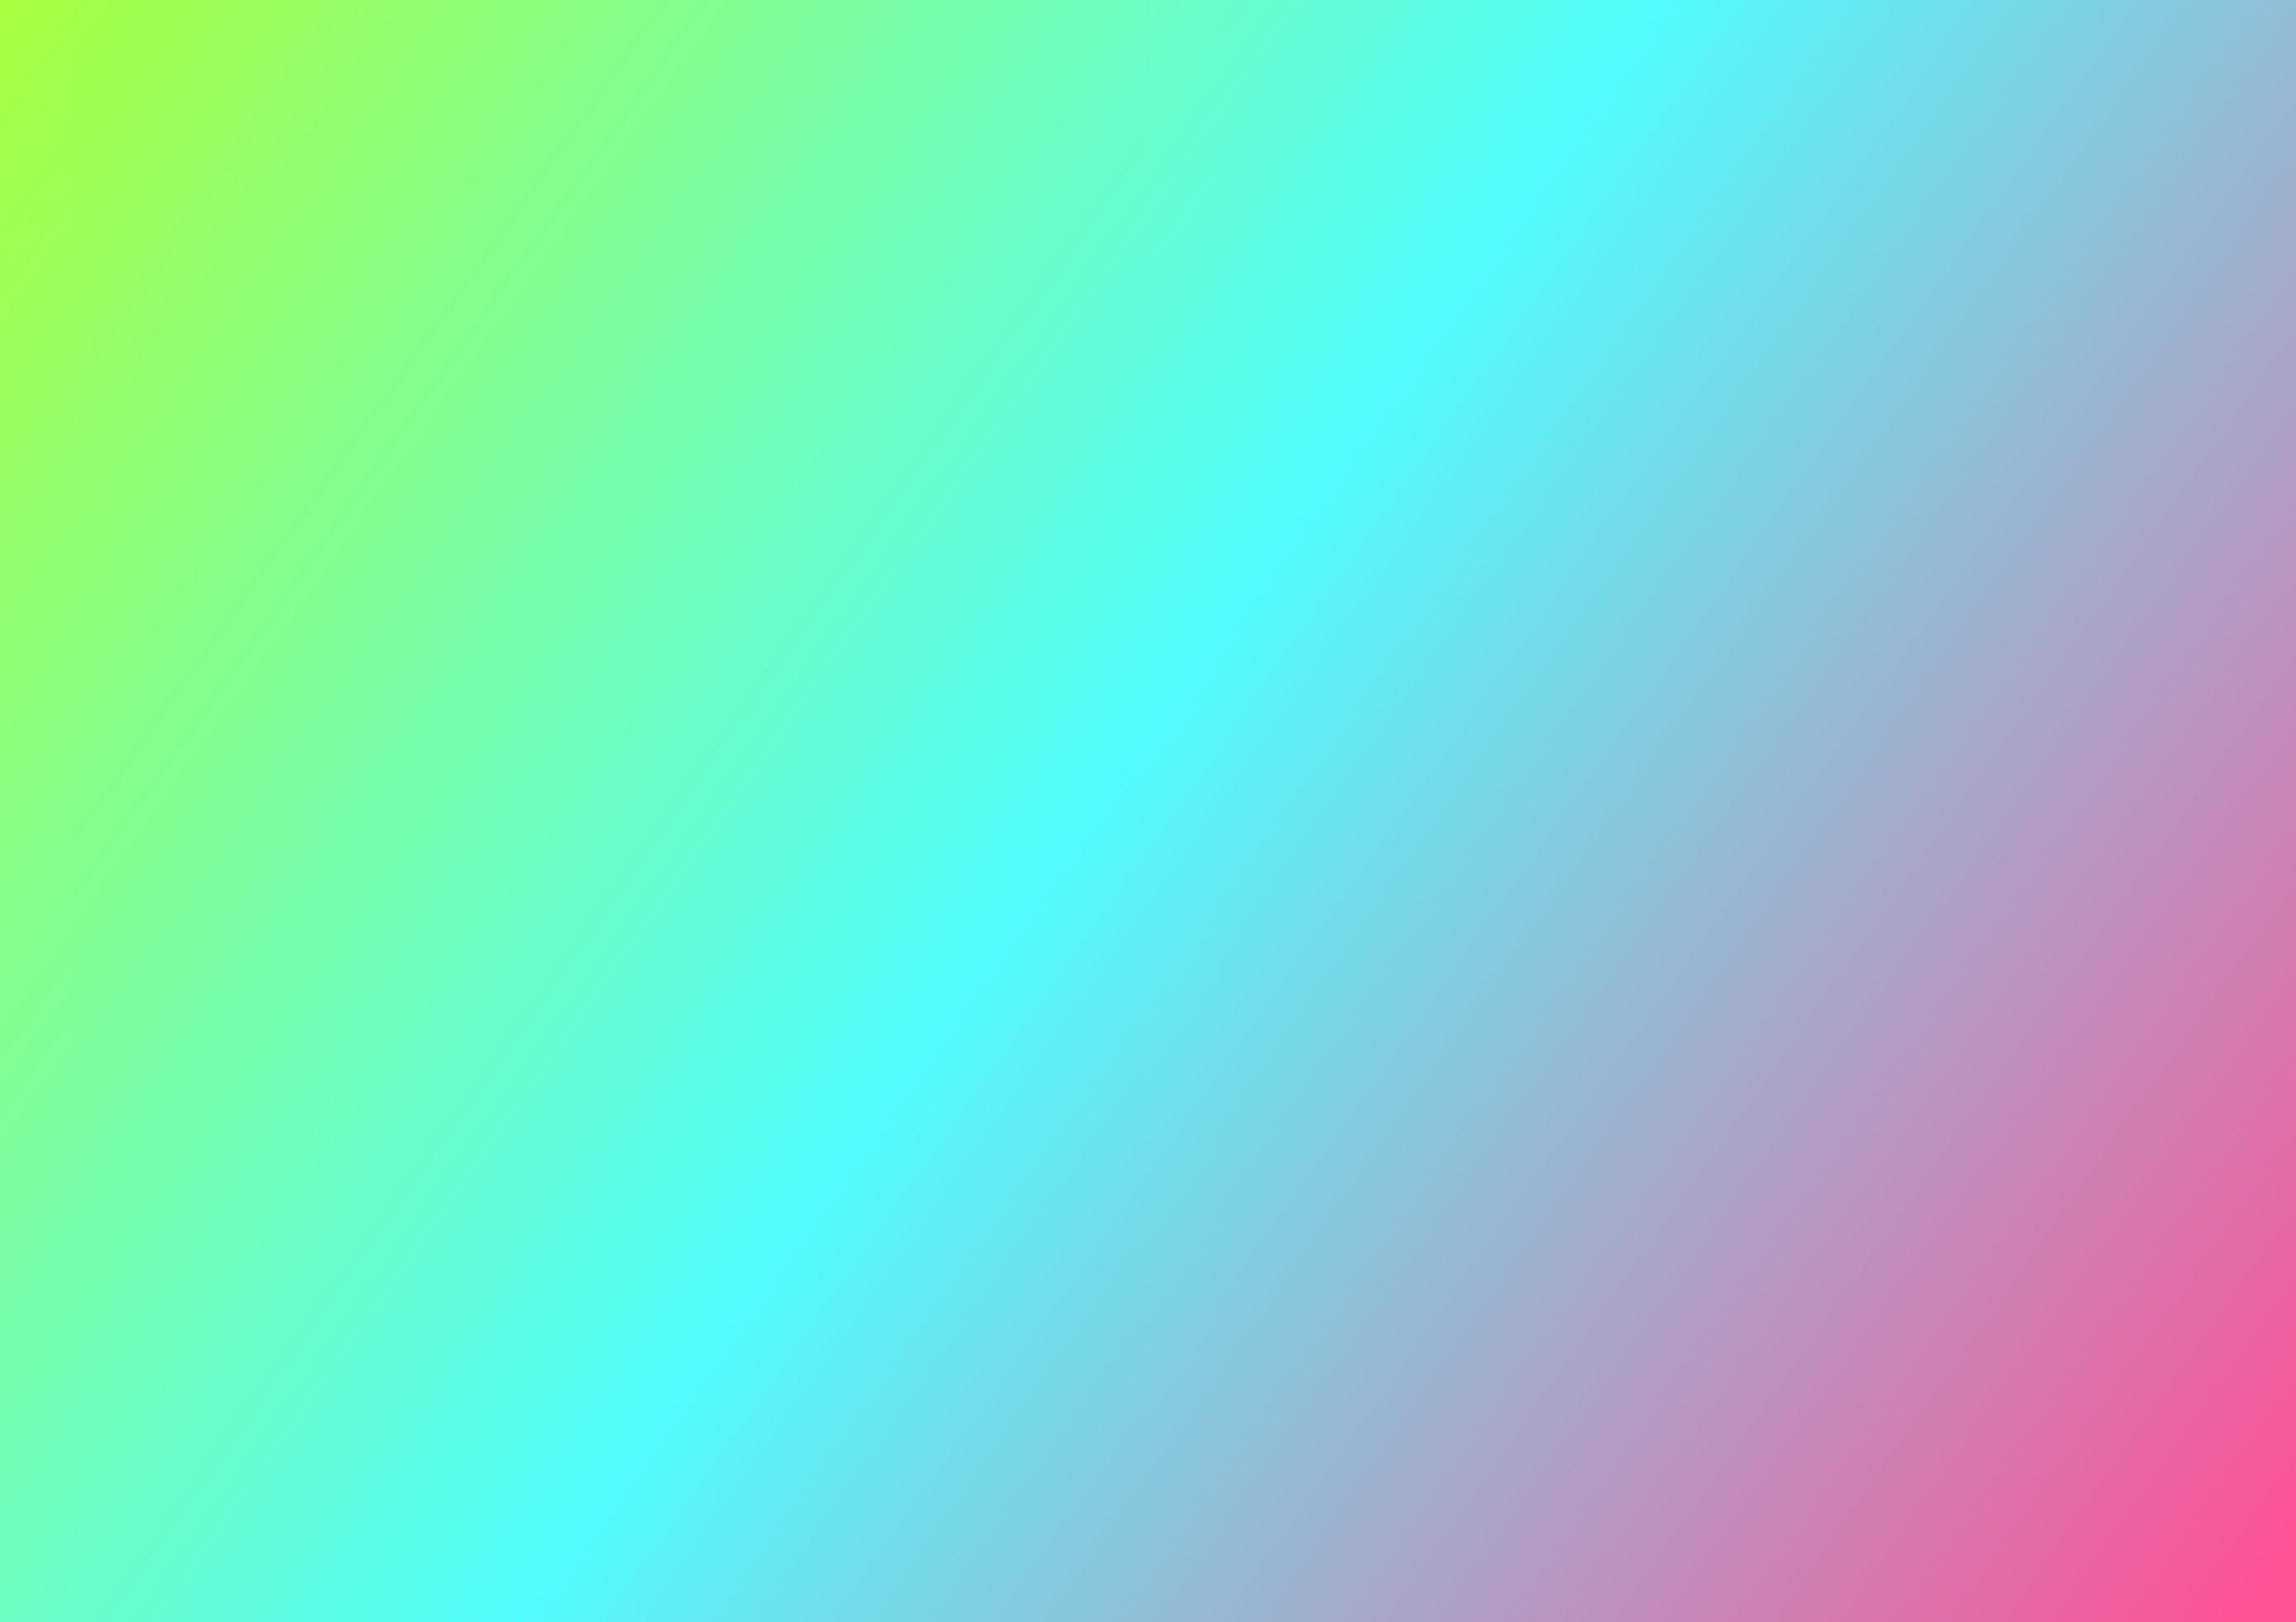 Màu xanh lá, tím và hồng nhuốm nắng đang chào đón bạn với hình nền gradient đầy sắc màu. Bạn sẽ không khỏi ngạc nhiên trước sự hoàn hảo của nó. Hãy cùng thực sự trải nghiệm sự khác biệt của hình ảnh này.